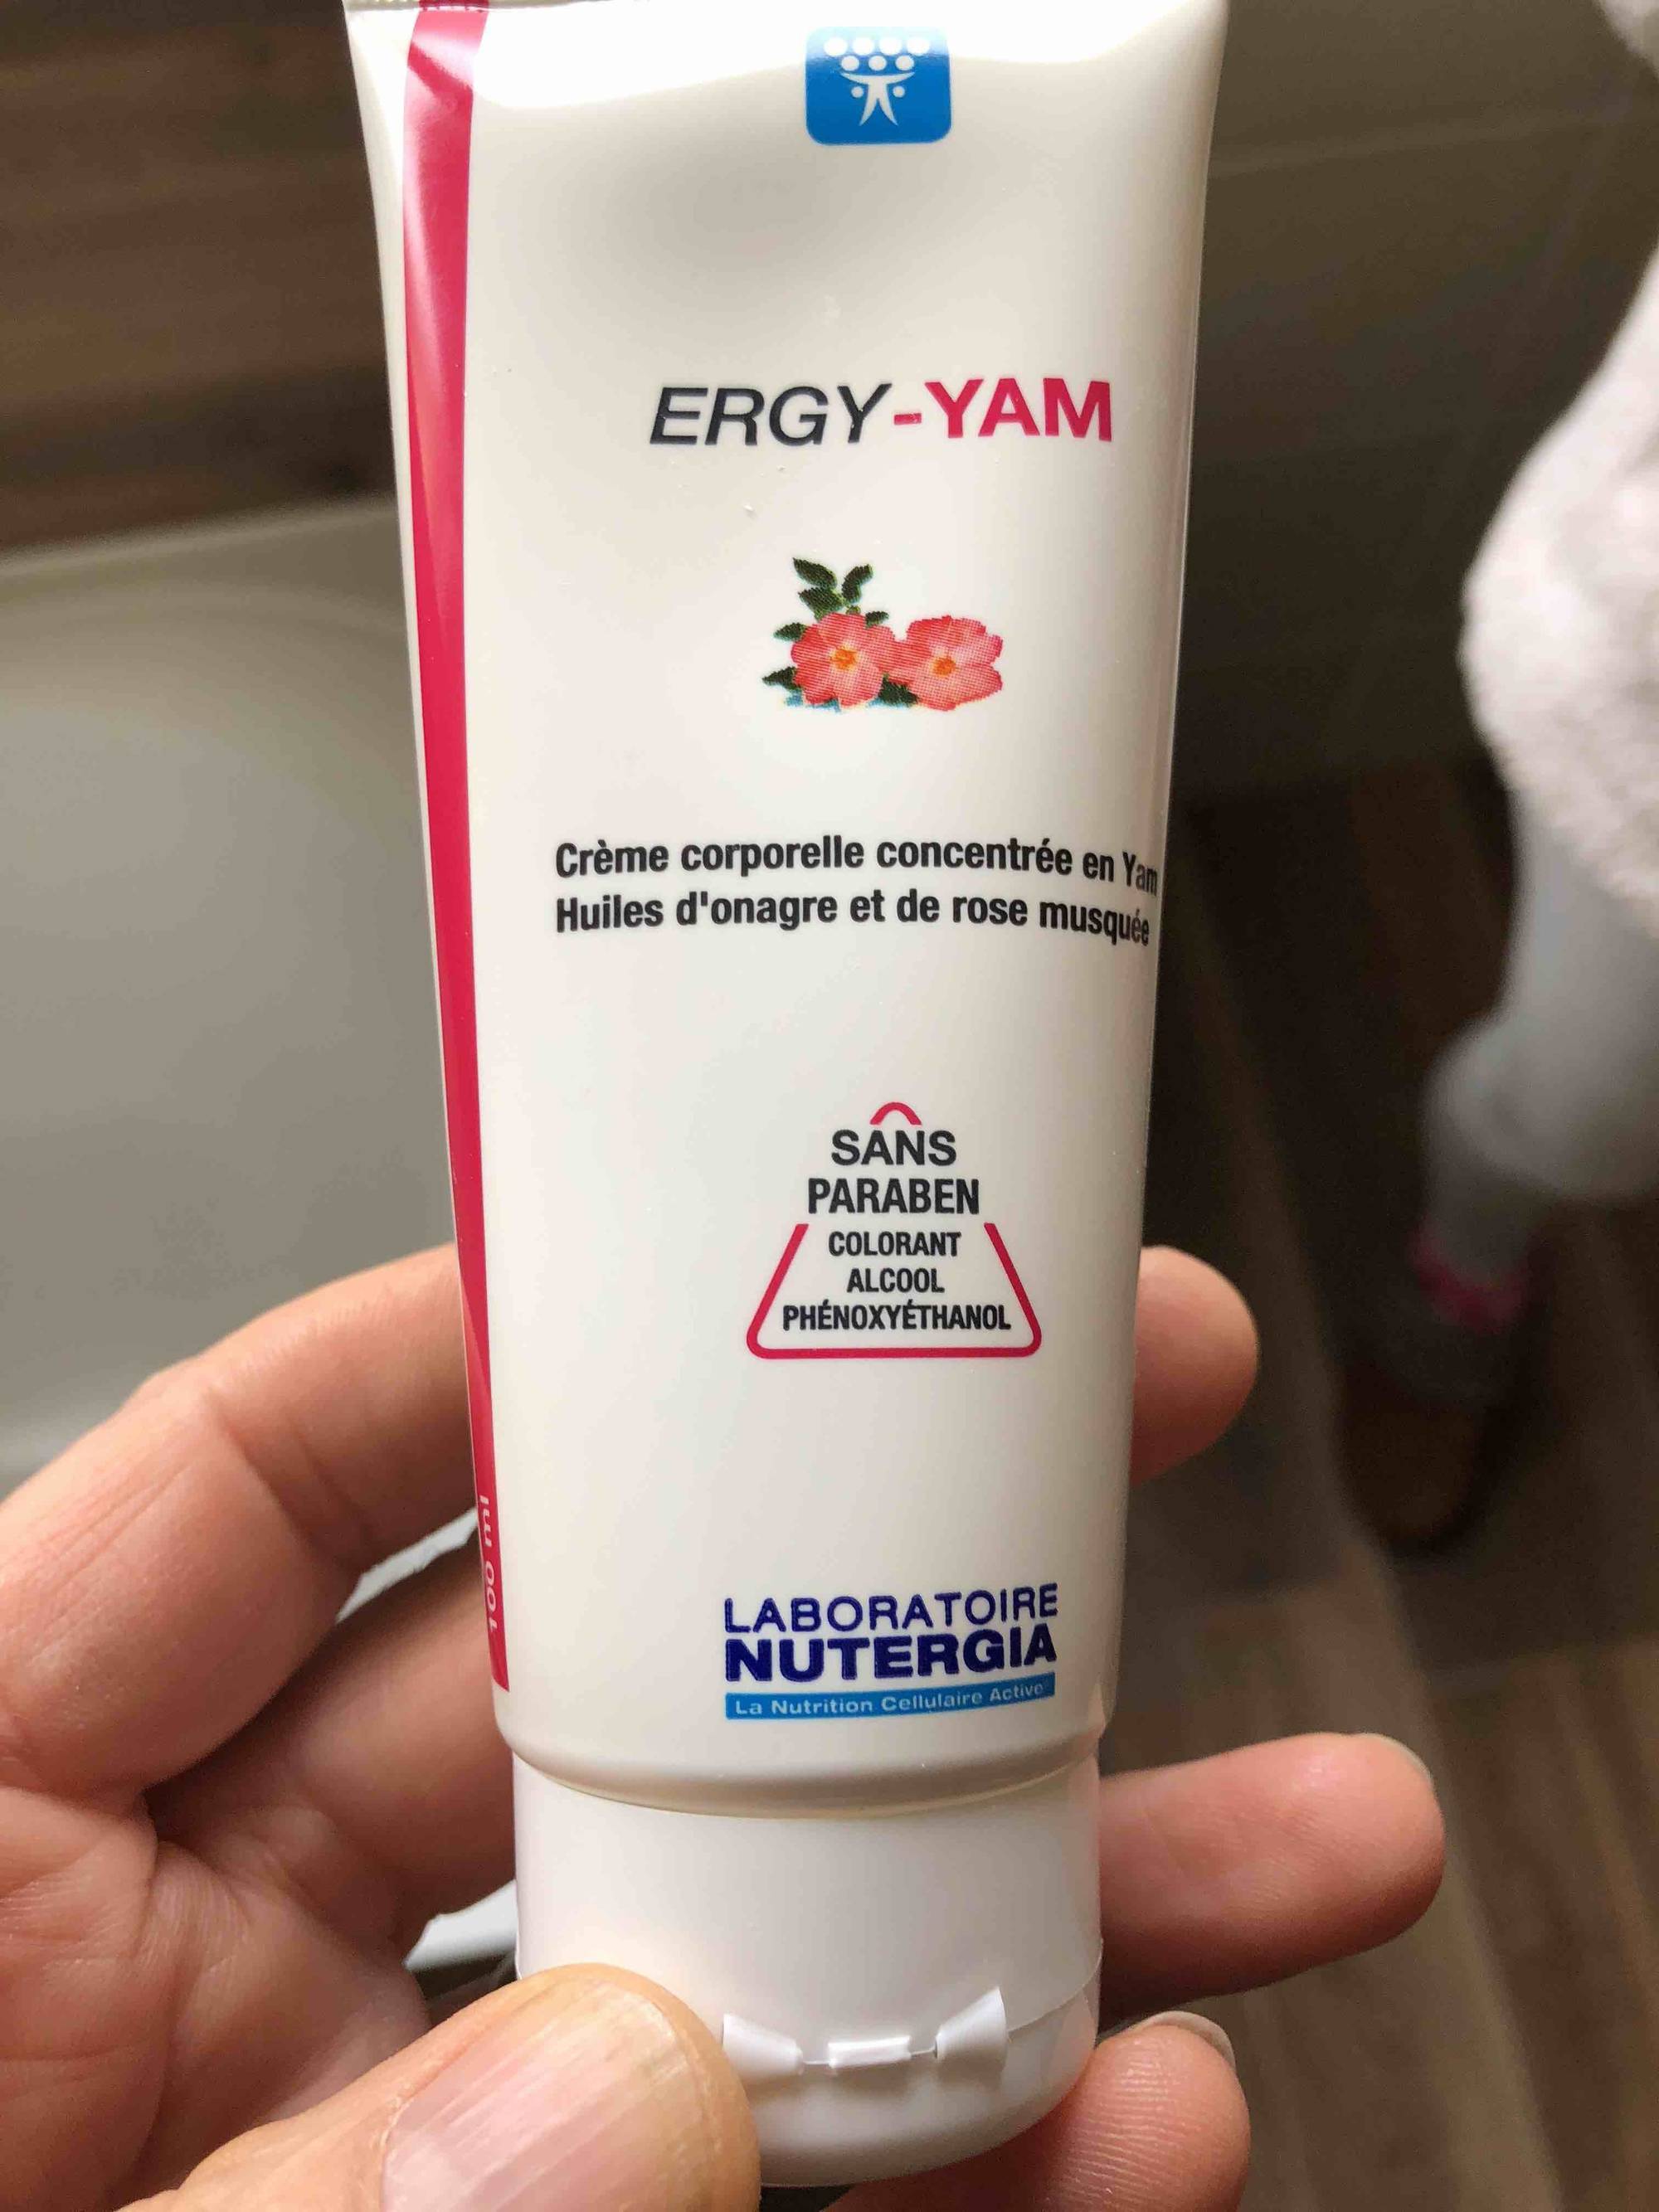 NUTERGIA - Ergy-yam - Crème corporelle concentrée